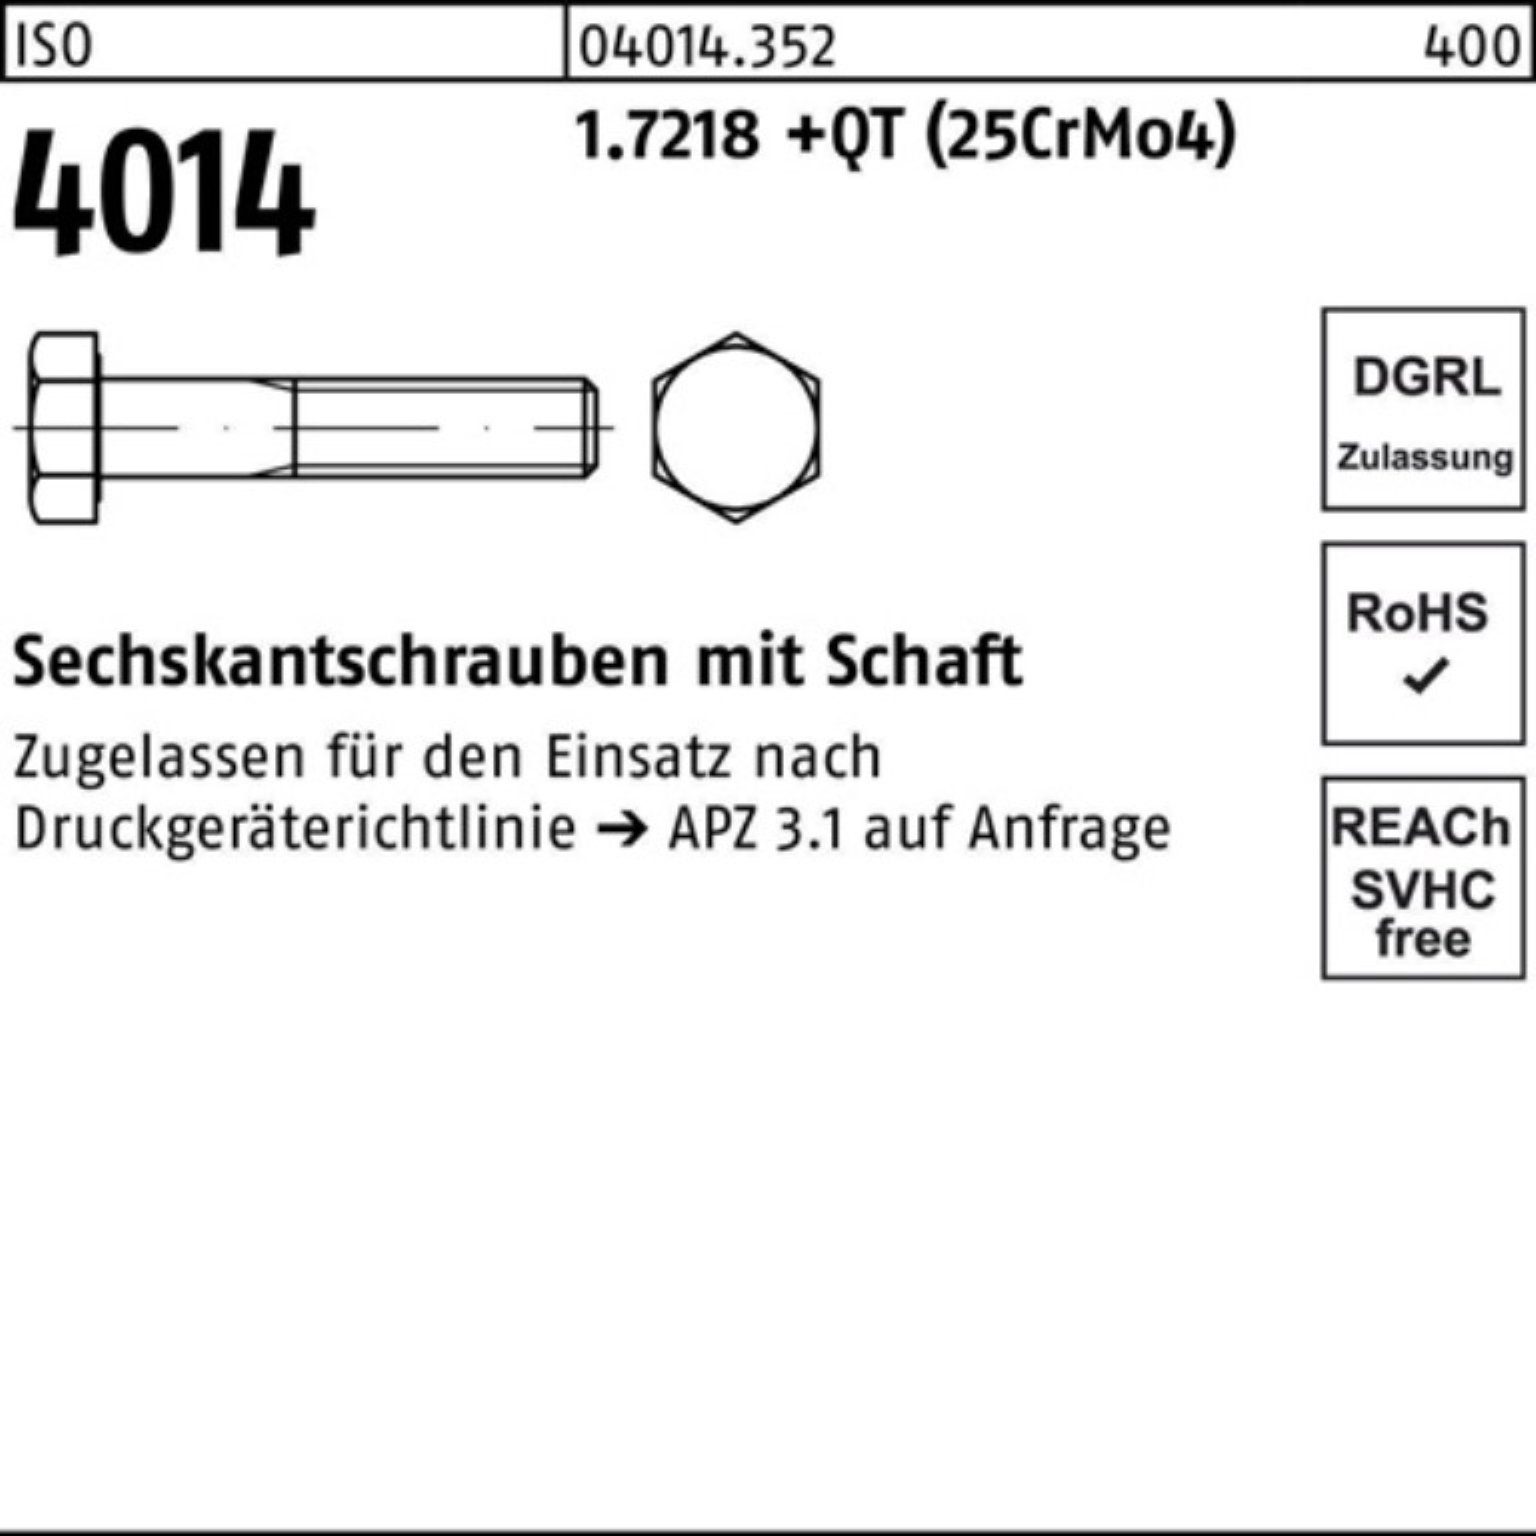 +QT M27x Bufab 100er 150 4014 Sechskantschraube Schaft ISO 1.7218 Sechskantschraube Pack (25Cr